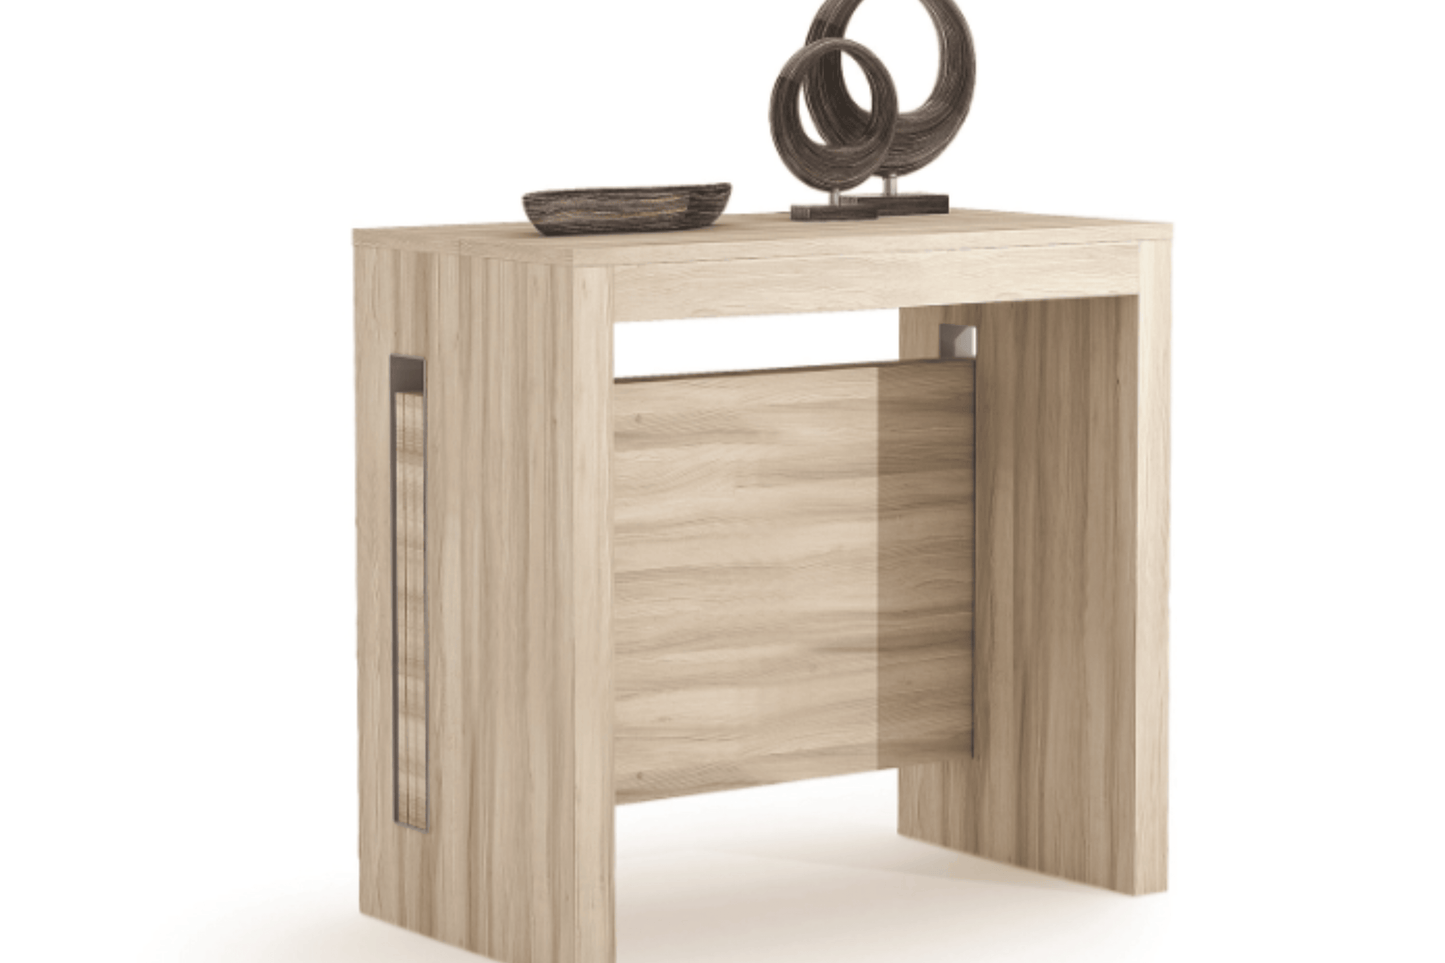 Ferrara Expandable Console Table Light Oak Model TC-540B-LO - Venini Furniture 